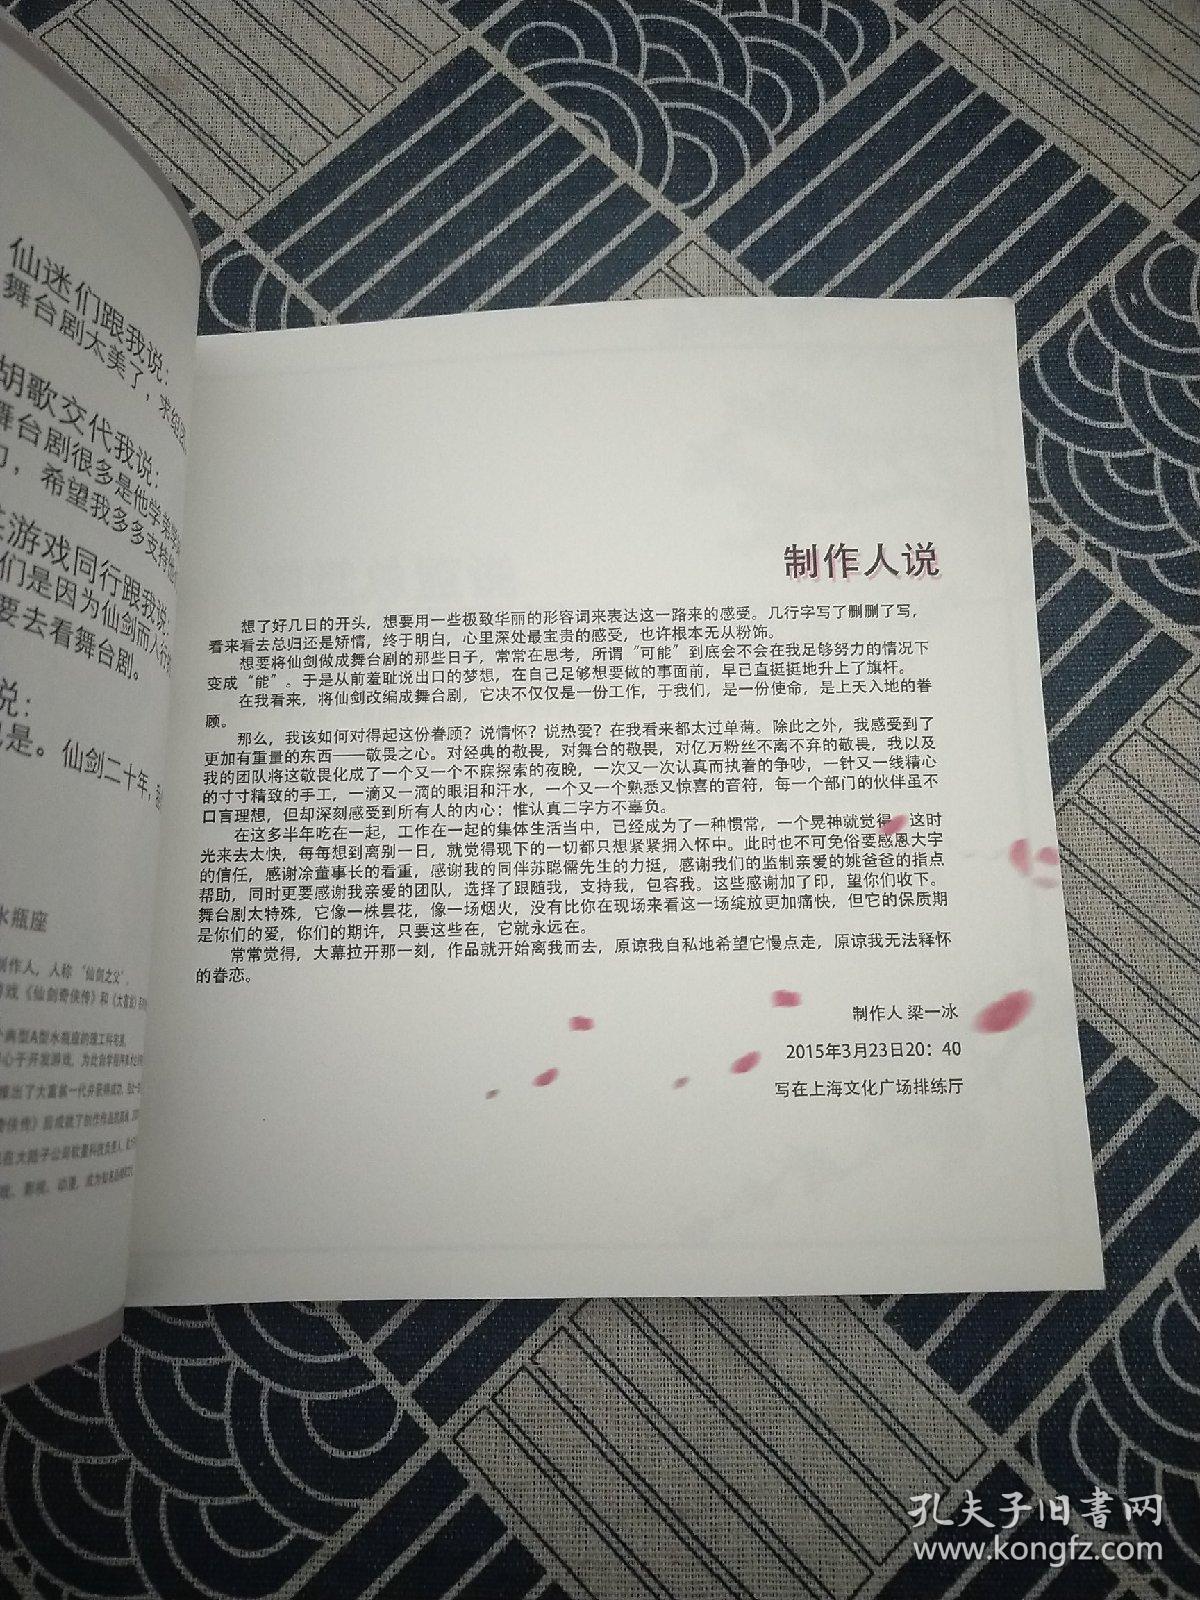 仙剑奇侠传 舞台剧  珍藏版纪念册